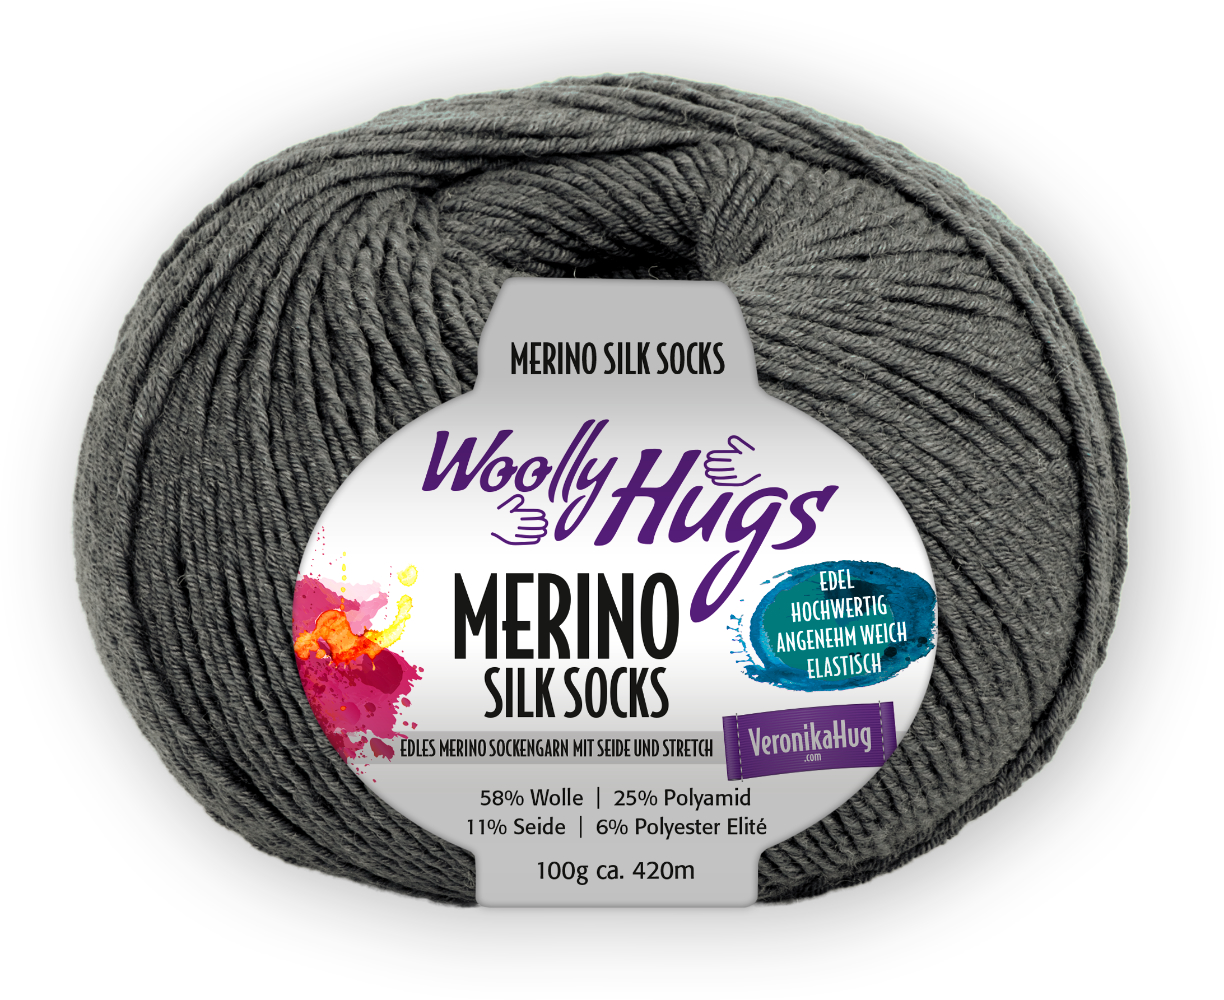 Merino Silk Socks Stretch, 4-fach von Woolly Hugs 0295 - mittelgrau